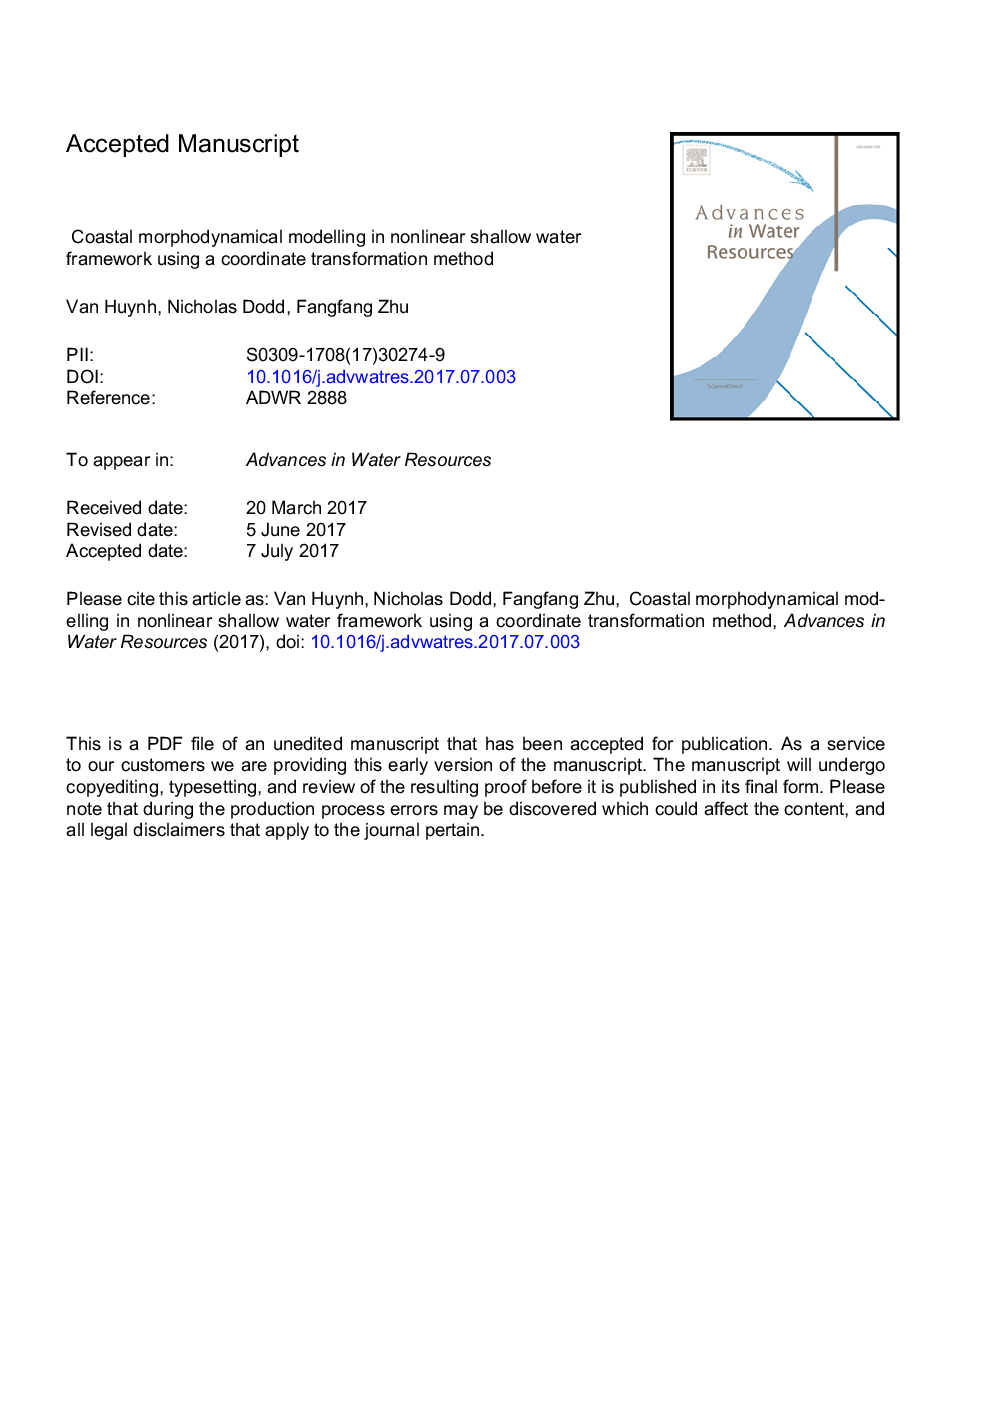 مدل سازی مورفودینامیکی ساحلی در چارچوب آب کم عمق آب با استفاده از روش تحول مختصات 